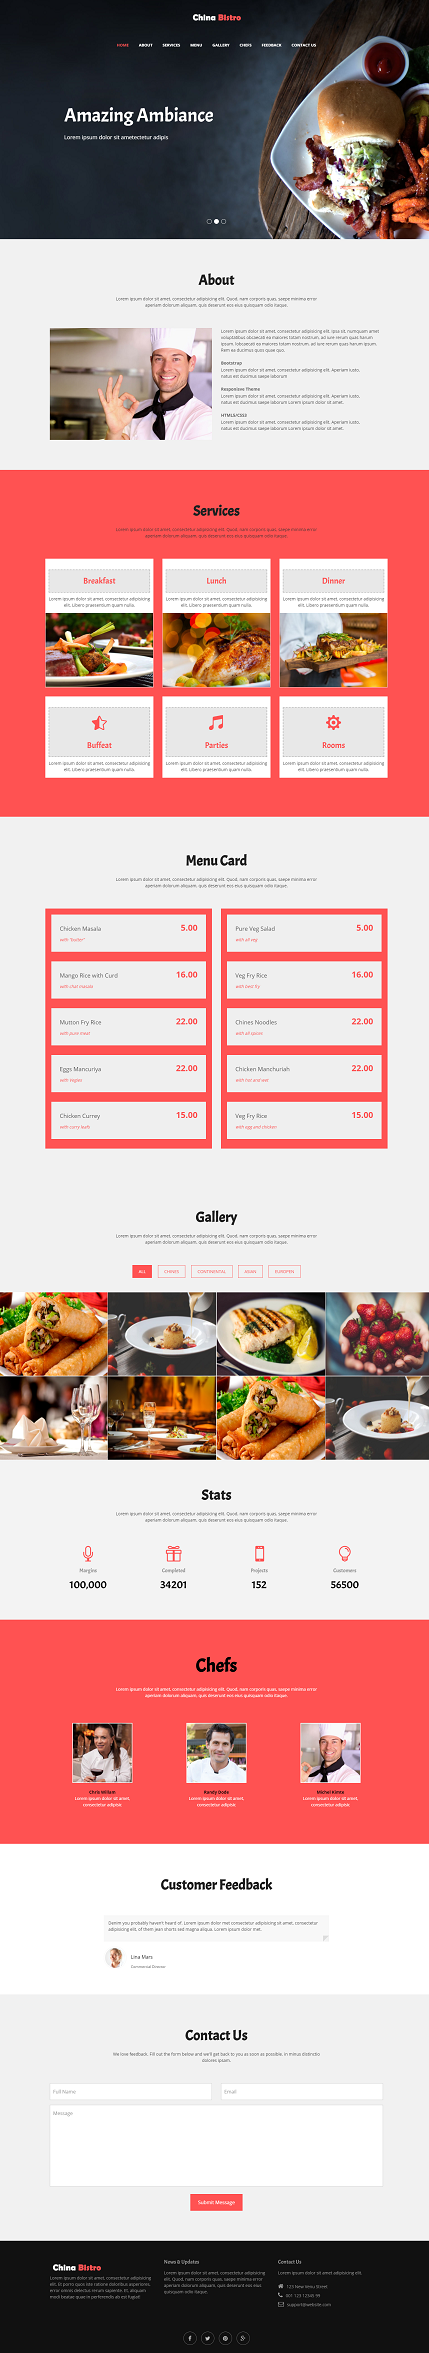 响应式大图美食美味外卖点餐平台网站模板